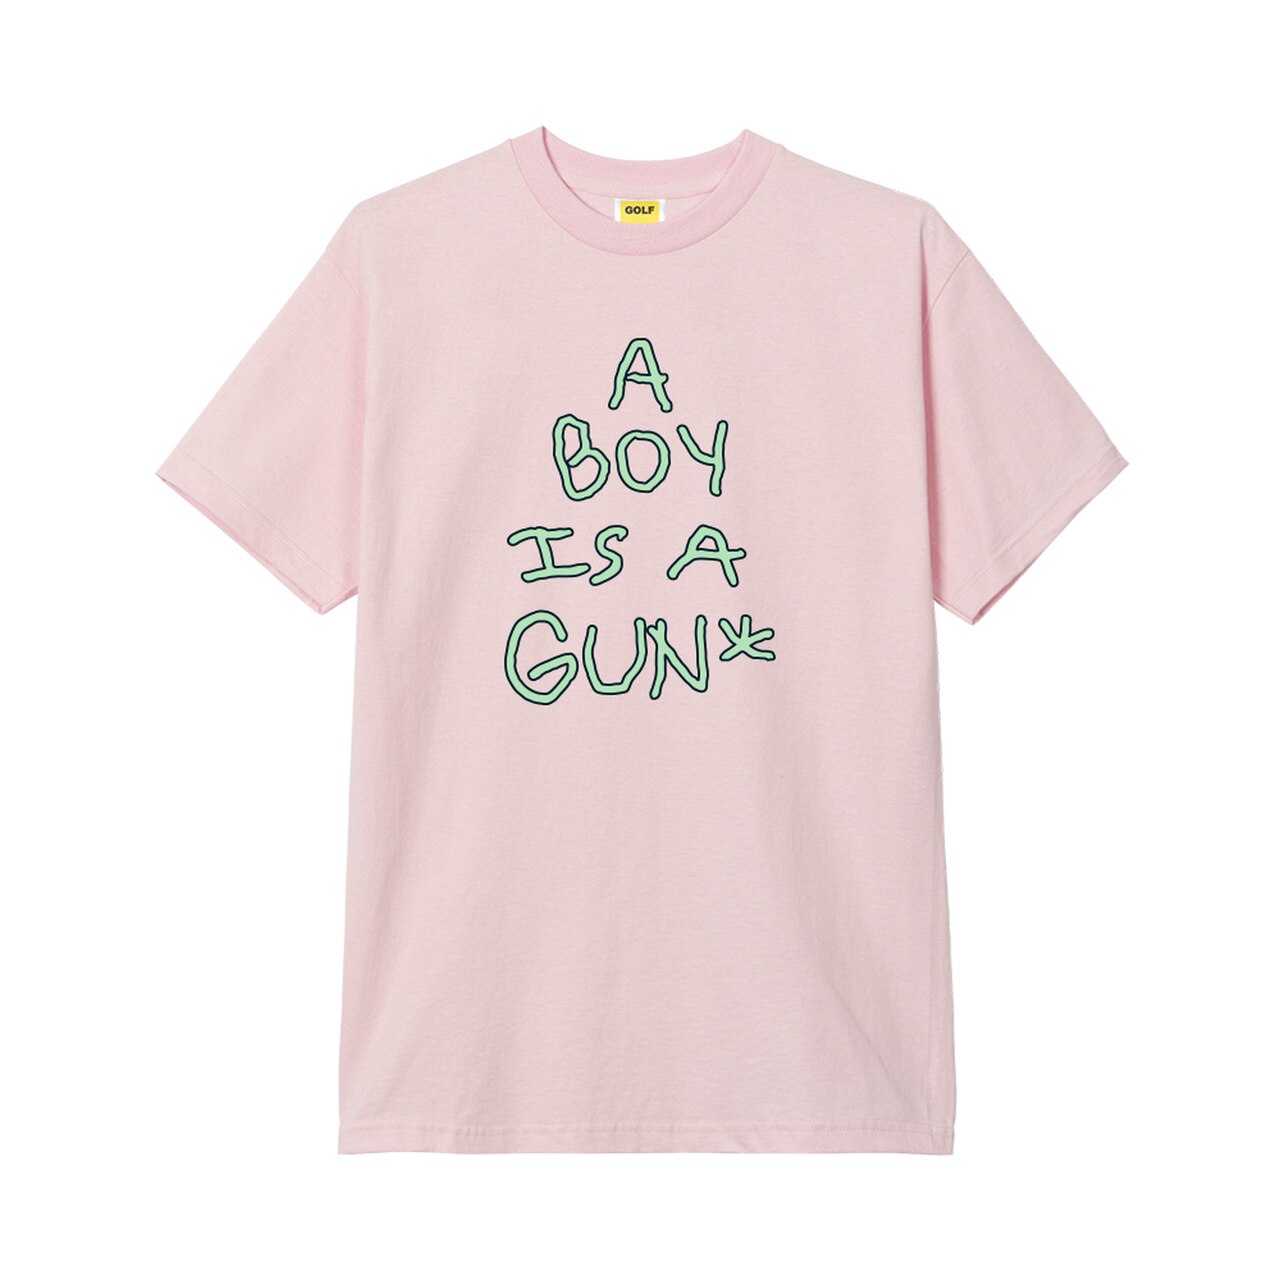 A BOY IS A GUN TEE LIGHT PINK oc